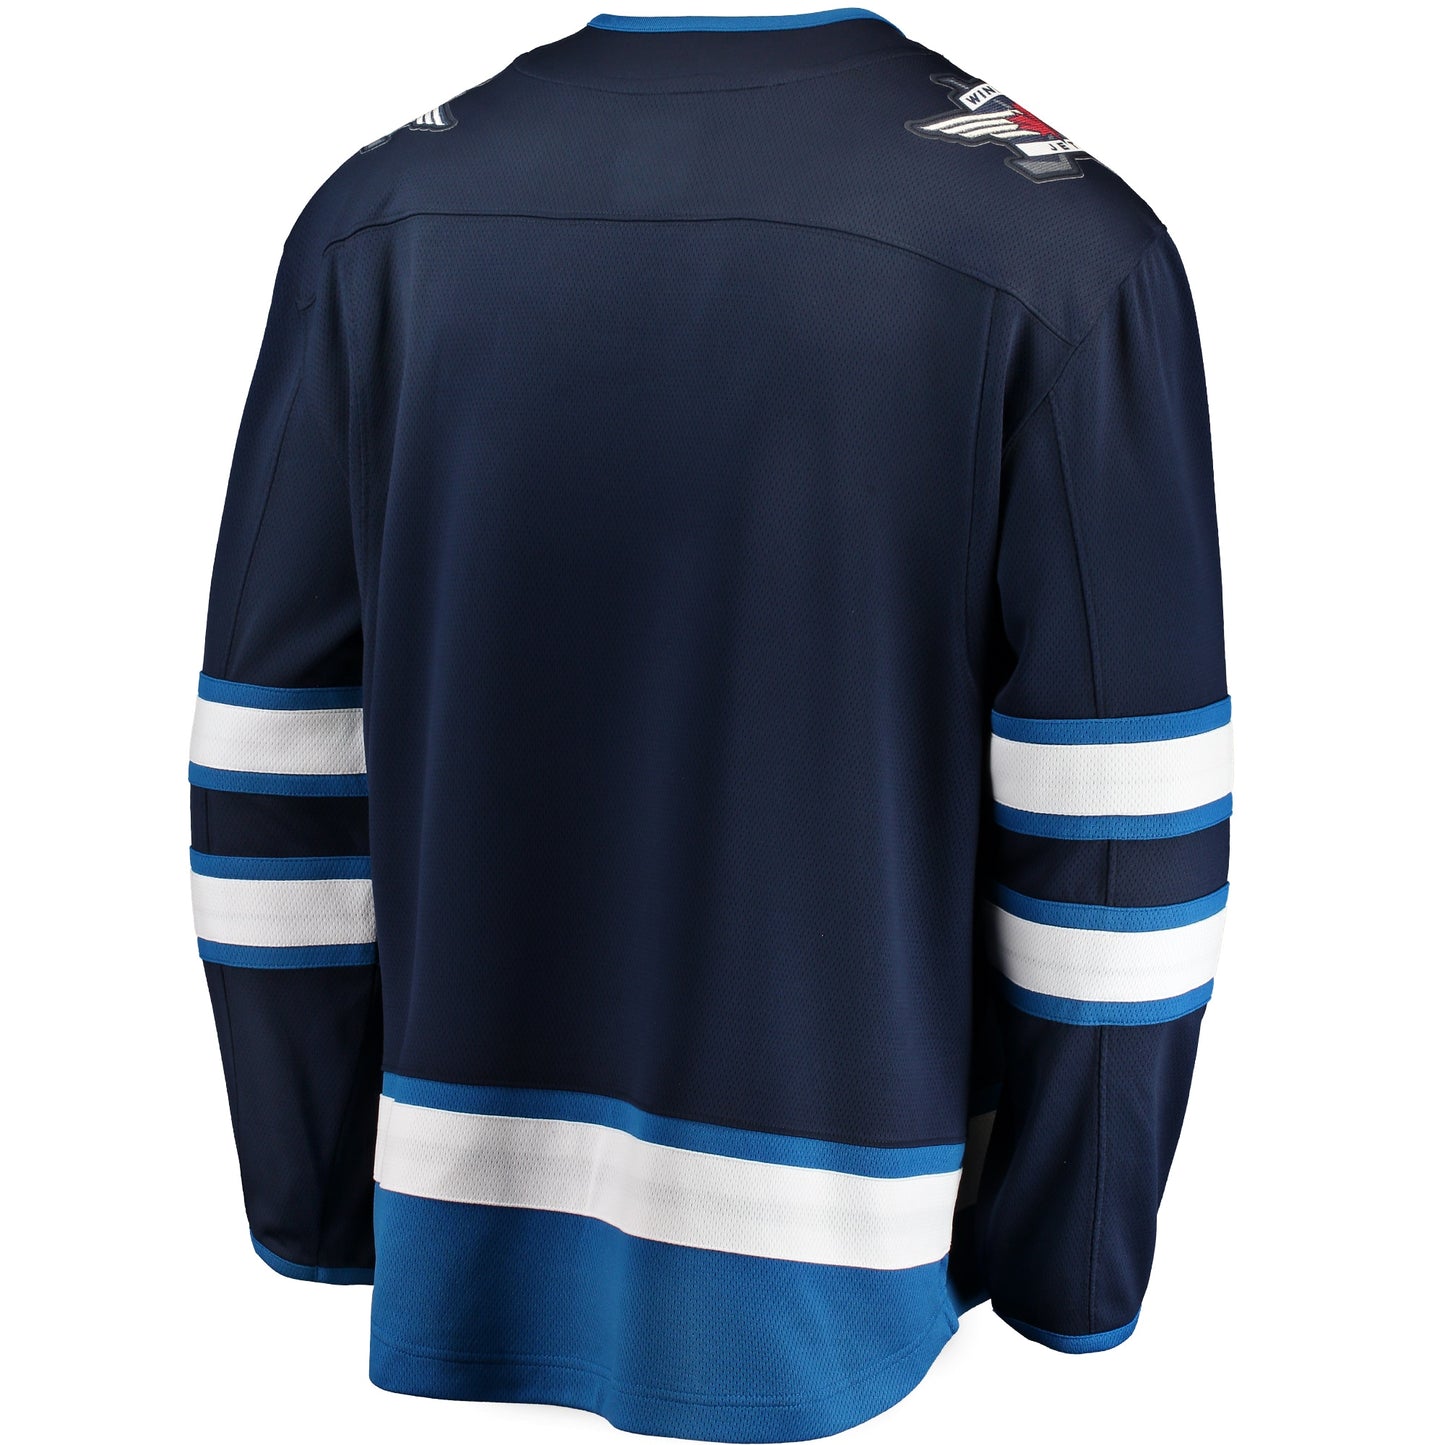 Winnipeg Jets Fanatics Branded Breakaway Home Jersey - Blue